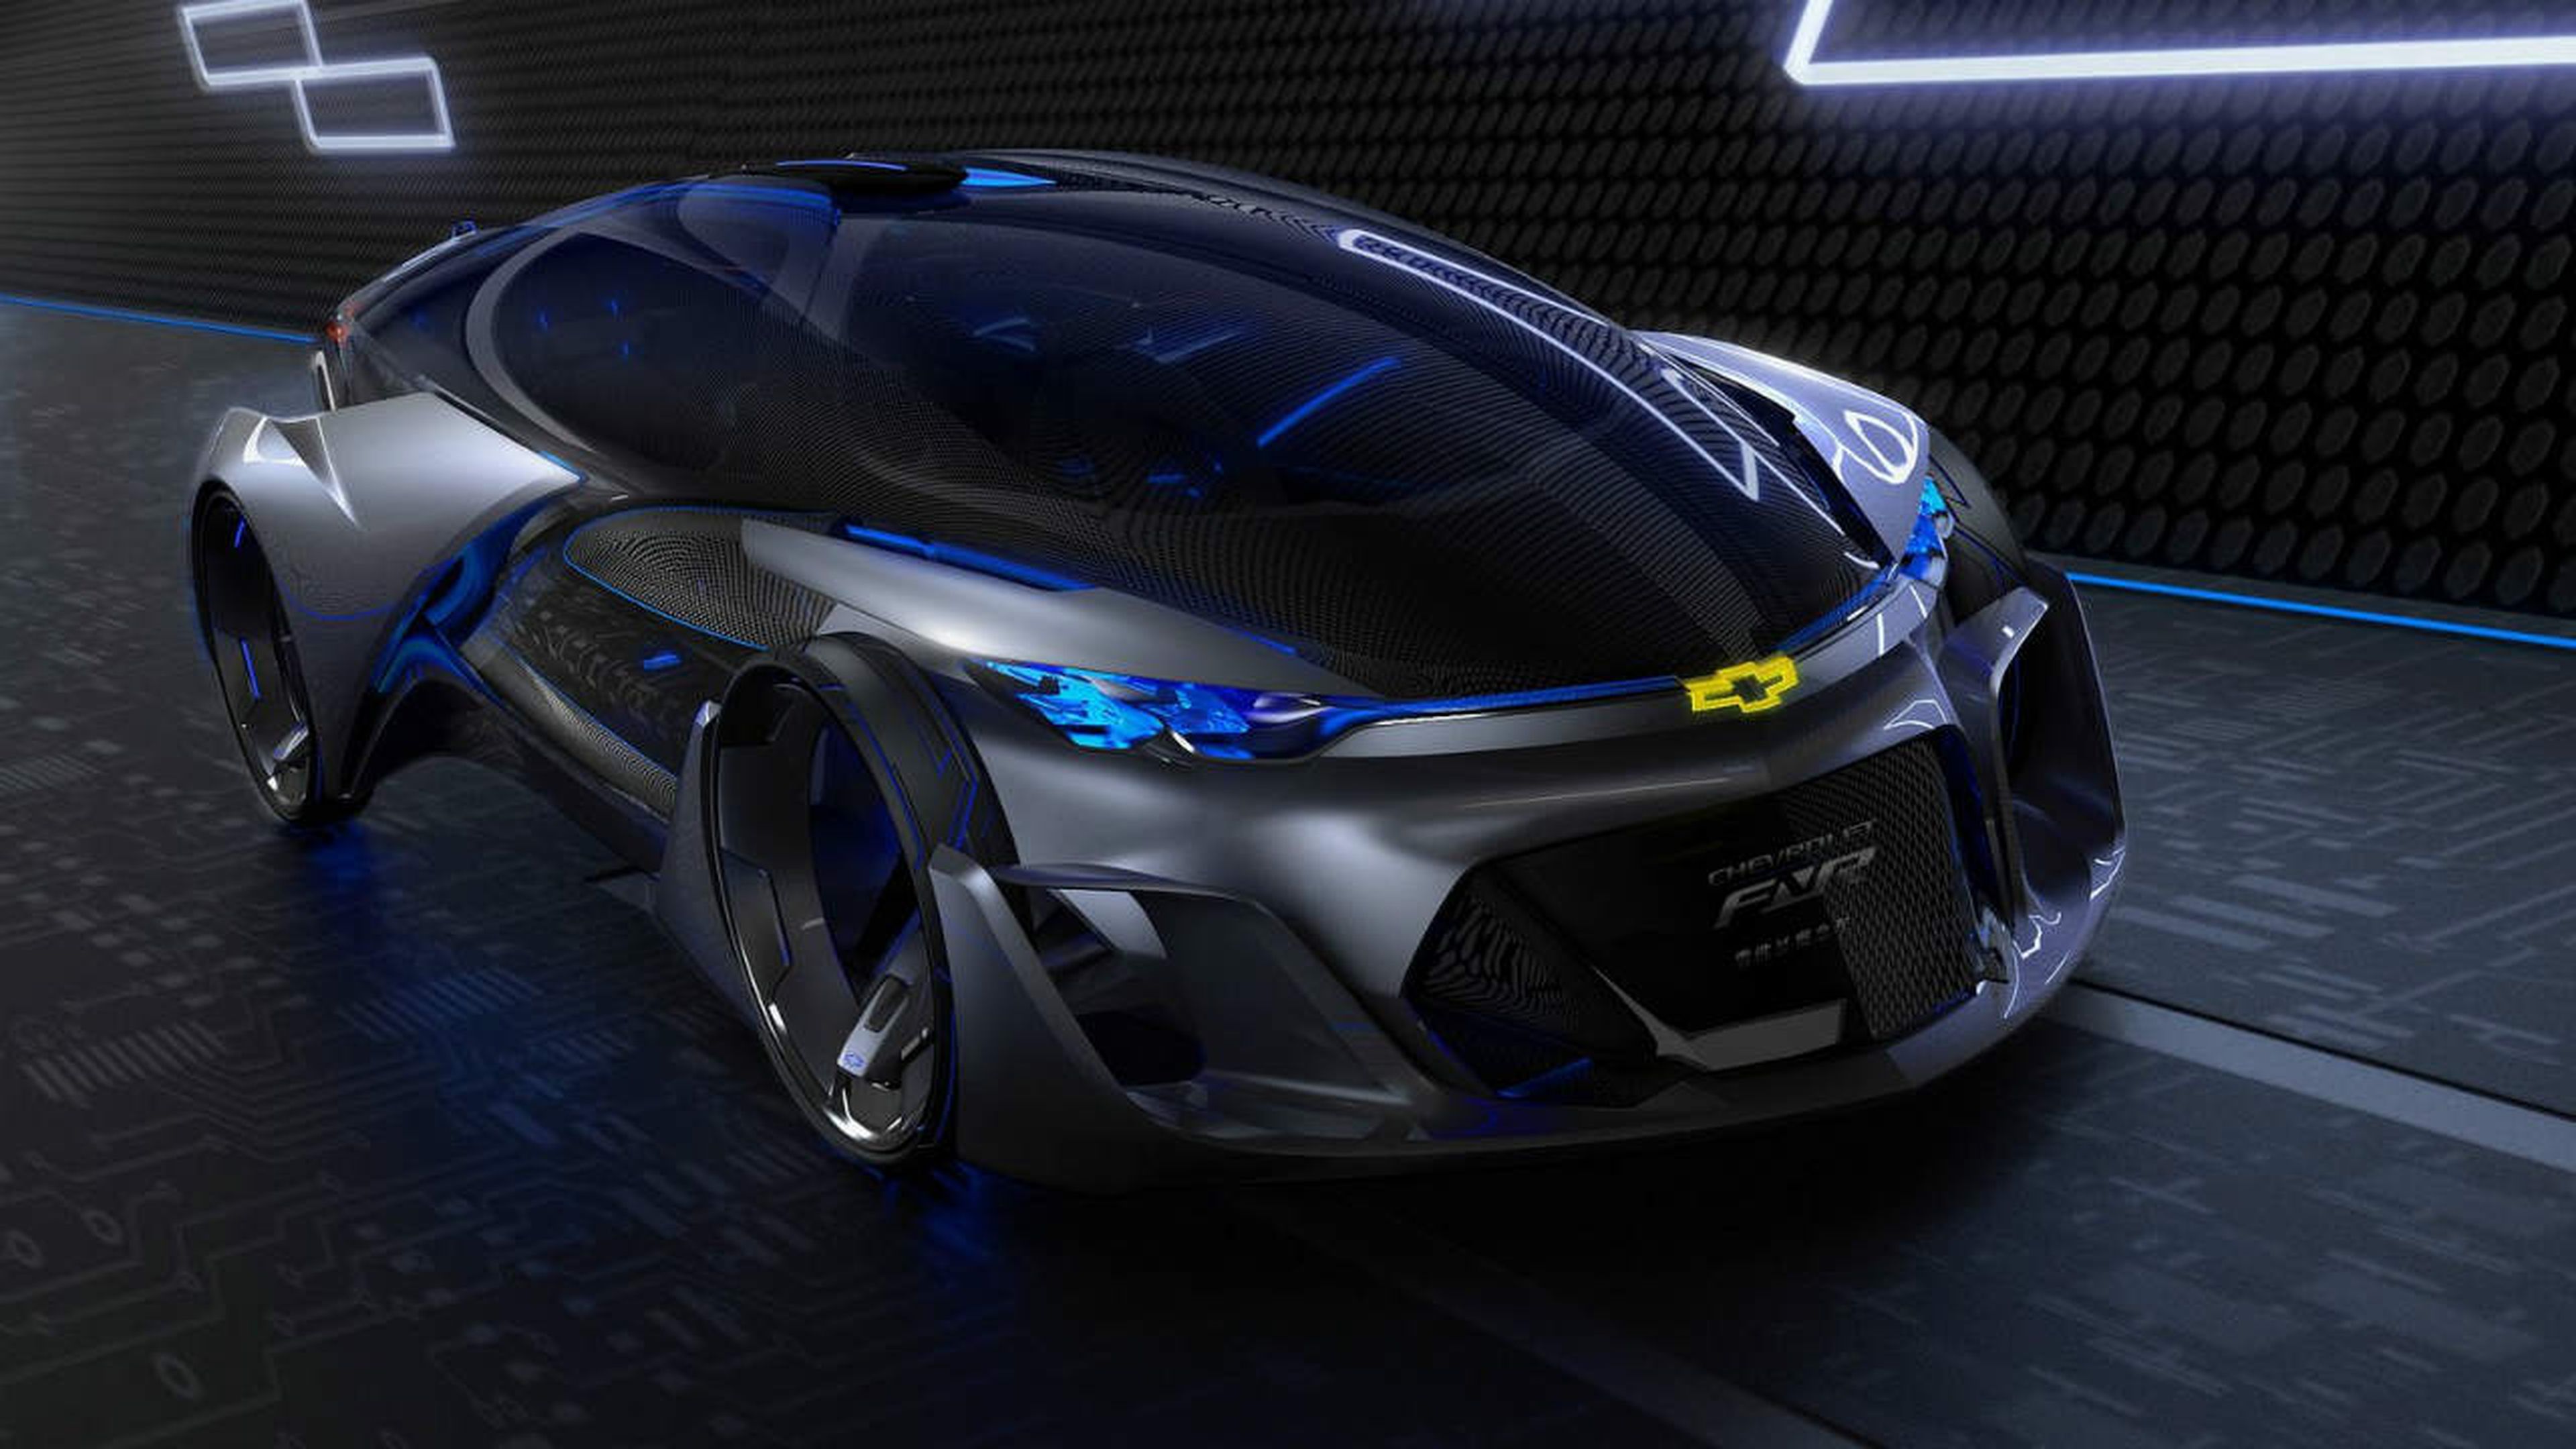 Los 5 prototipos más espectaculares de los últimos tiempos Chevrolet FNR Concept